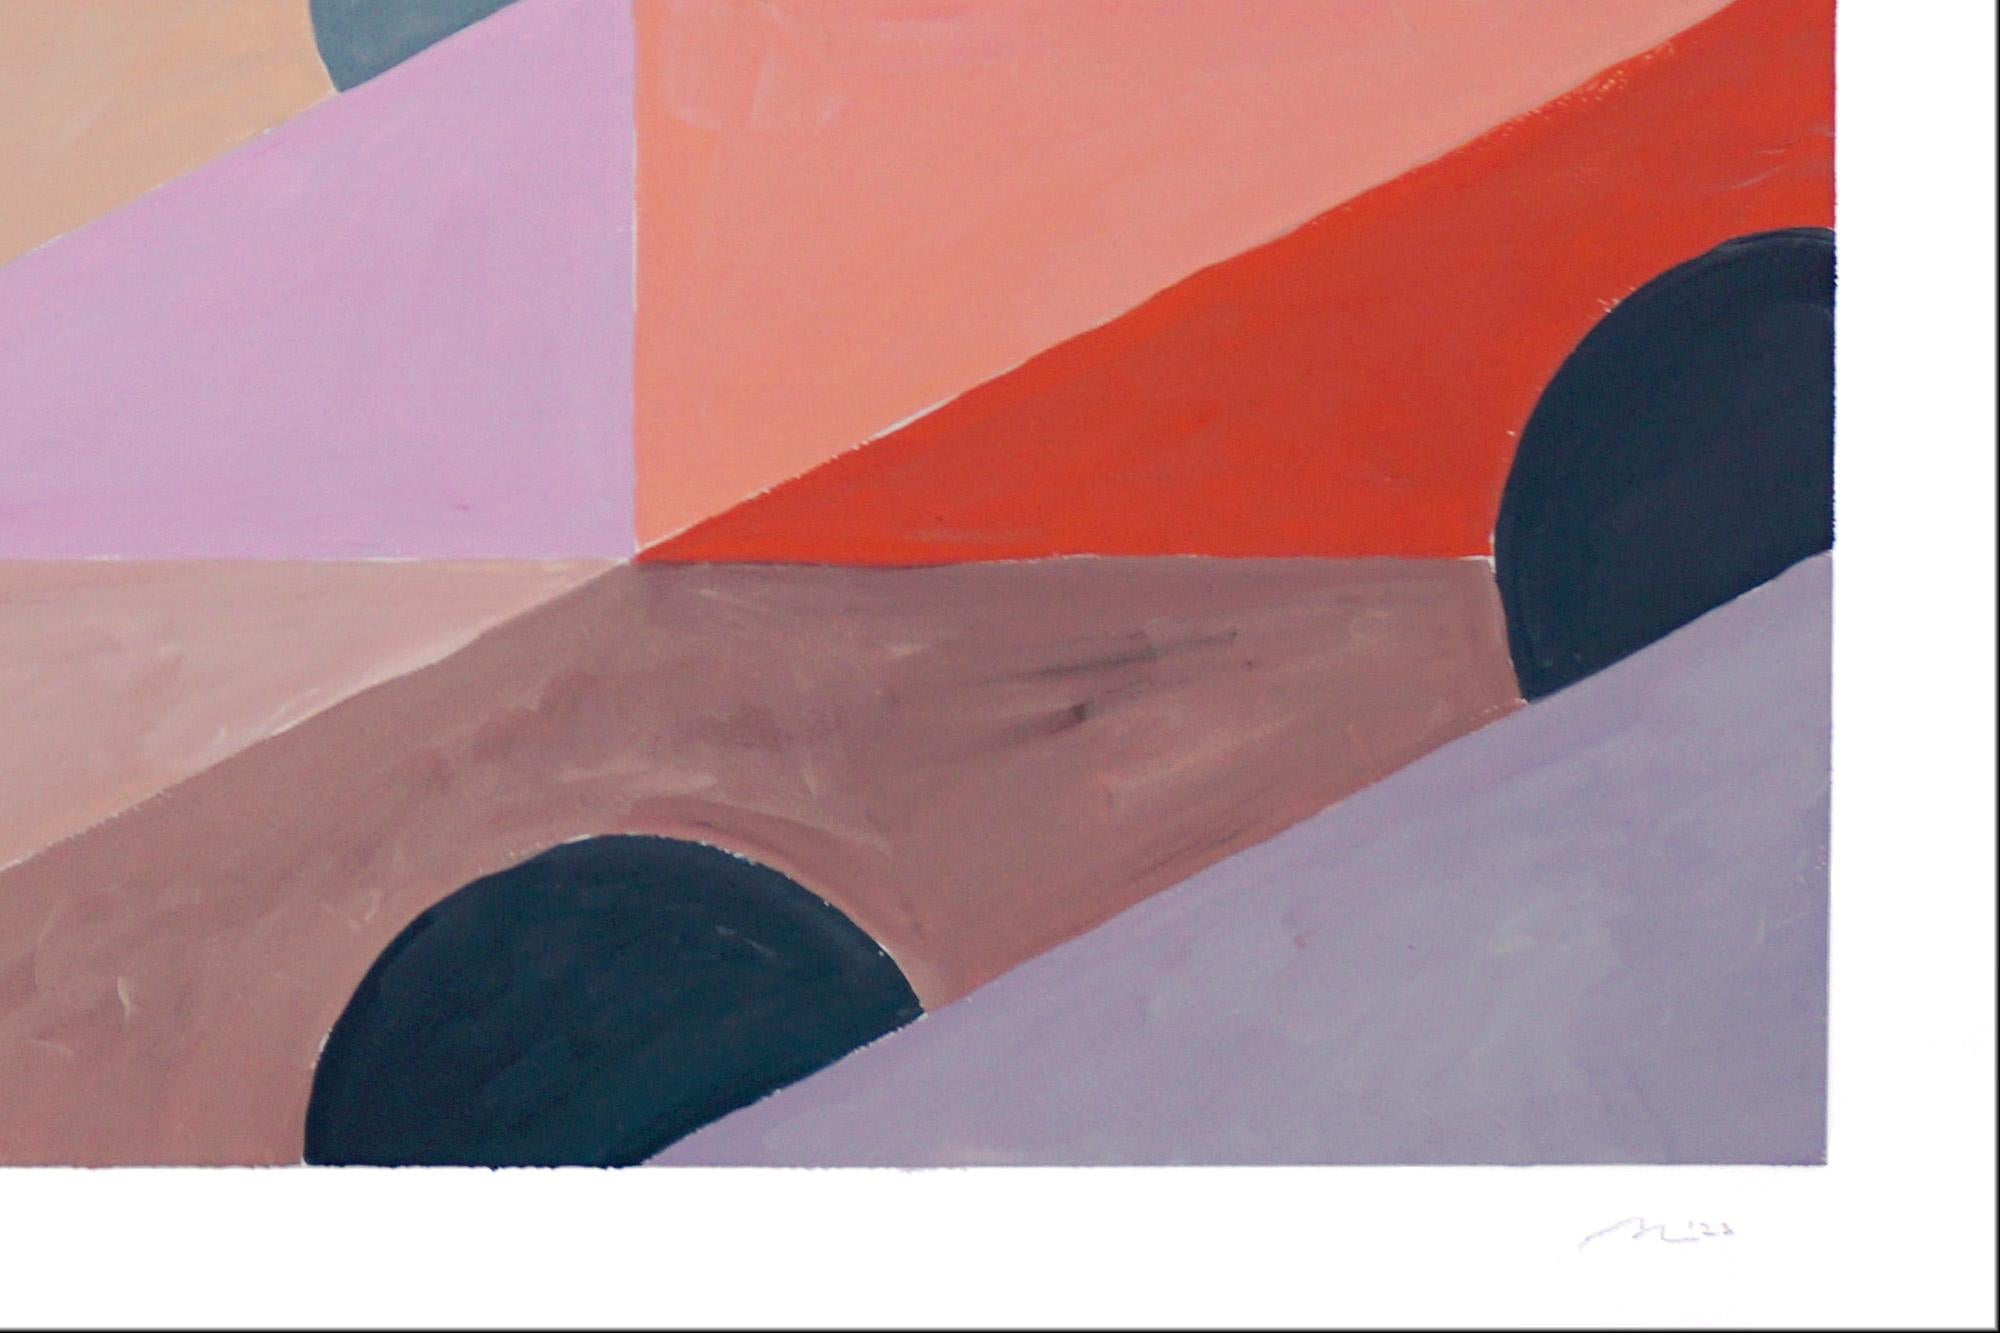 Abend in den Tropen, Miami-Sonnenaufgang-Muster, Geometrisch, Gelb, Grau und Koralle (Braun), Landscape Painting, von Natalia Roman